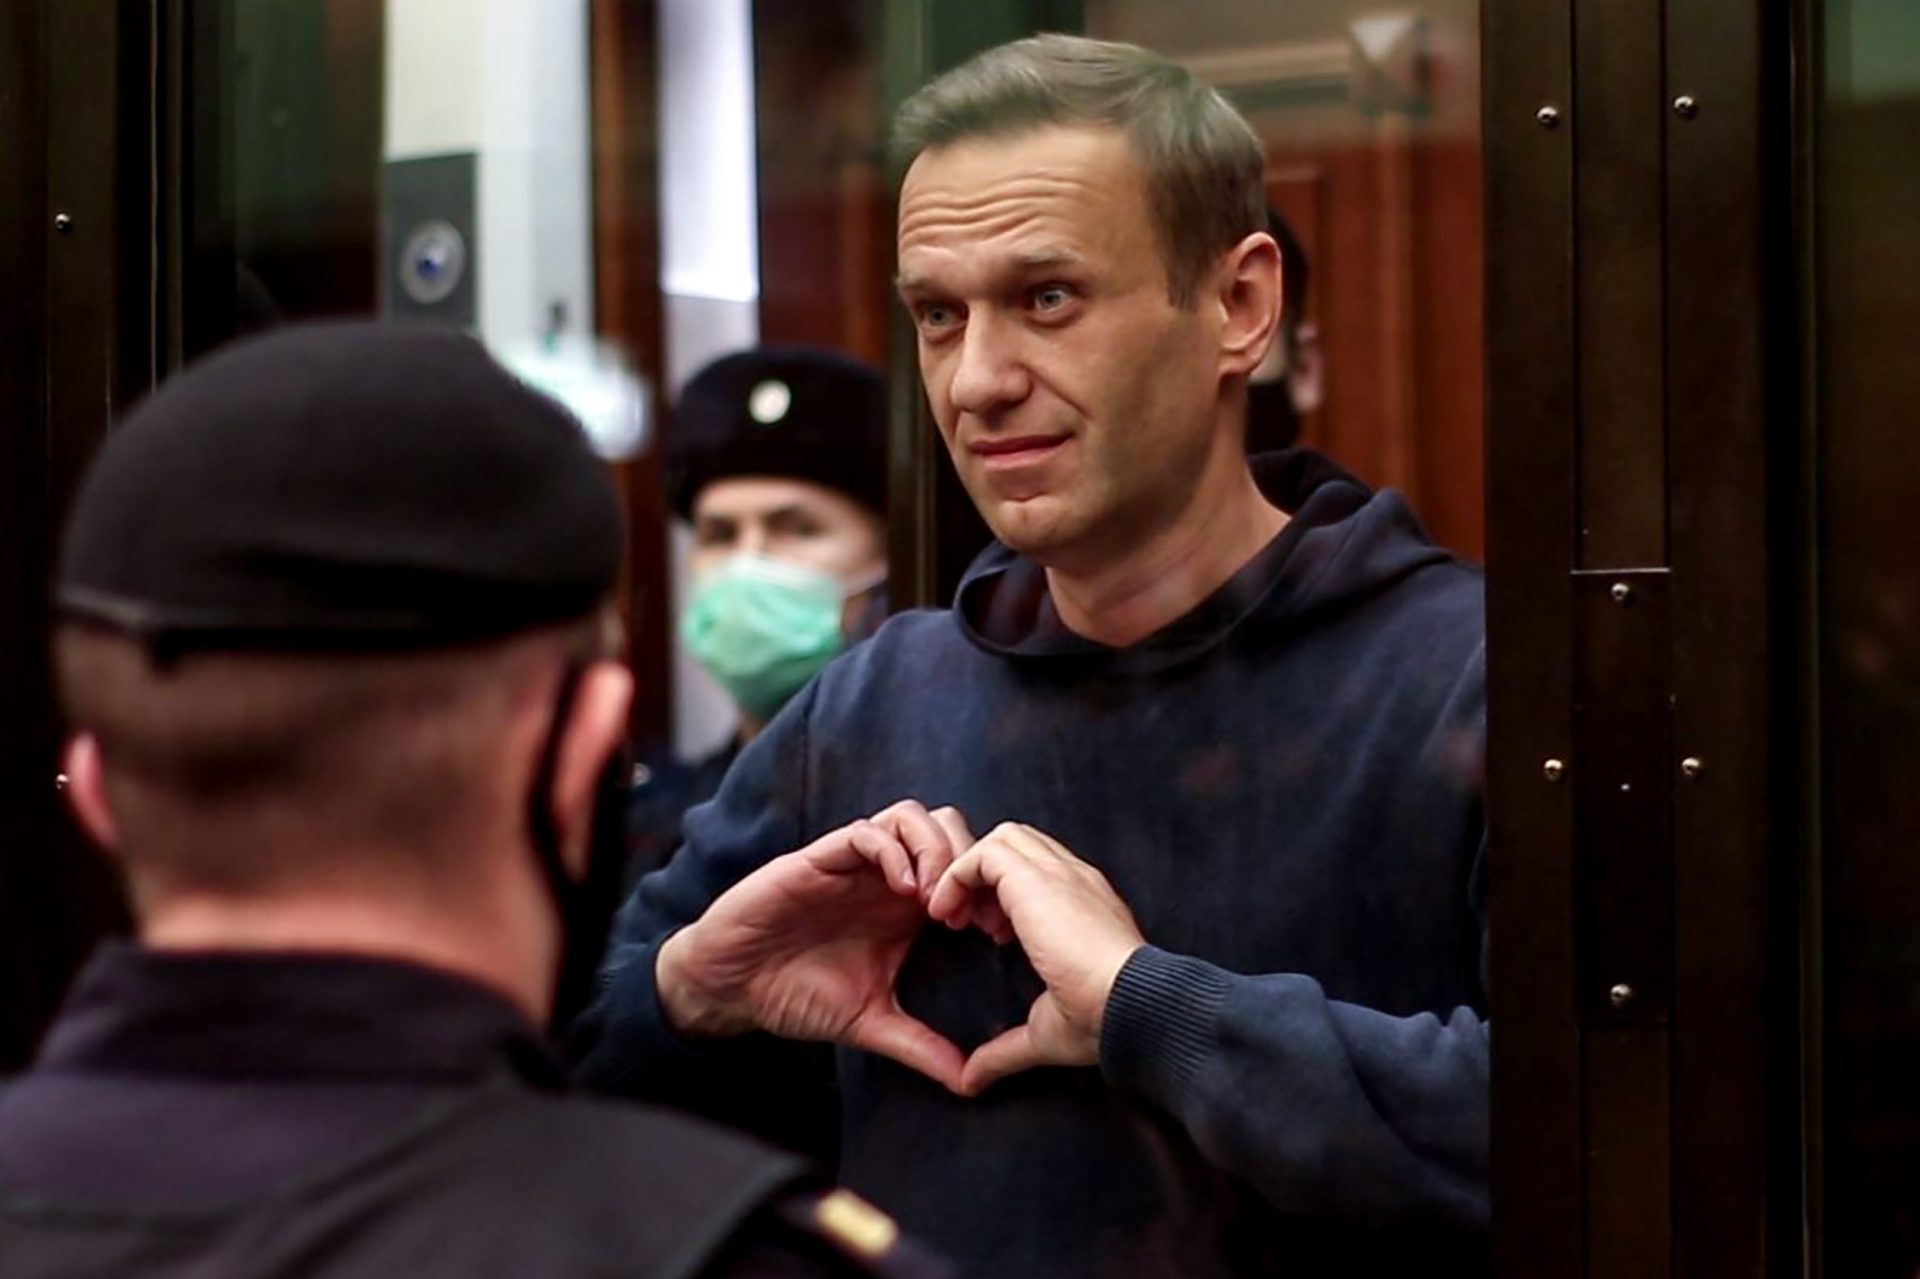 Equipa de Navalny diz que funerária se recusou a transportar corpo